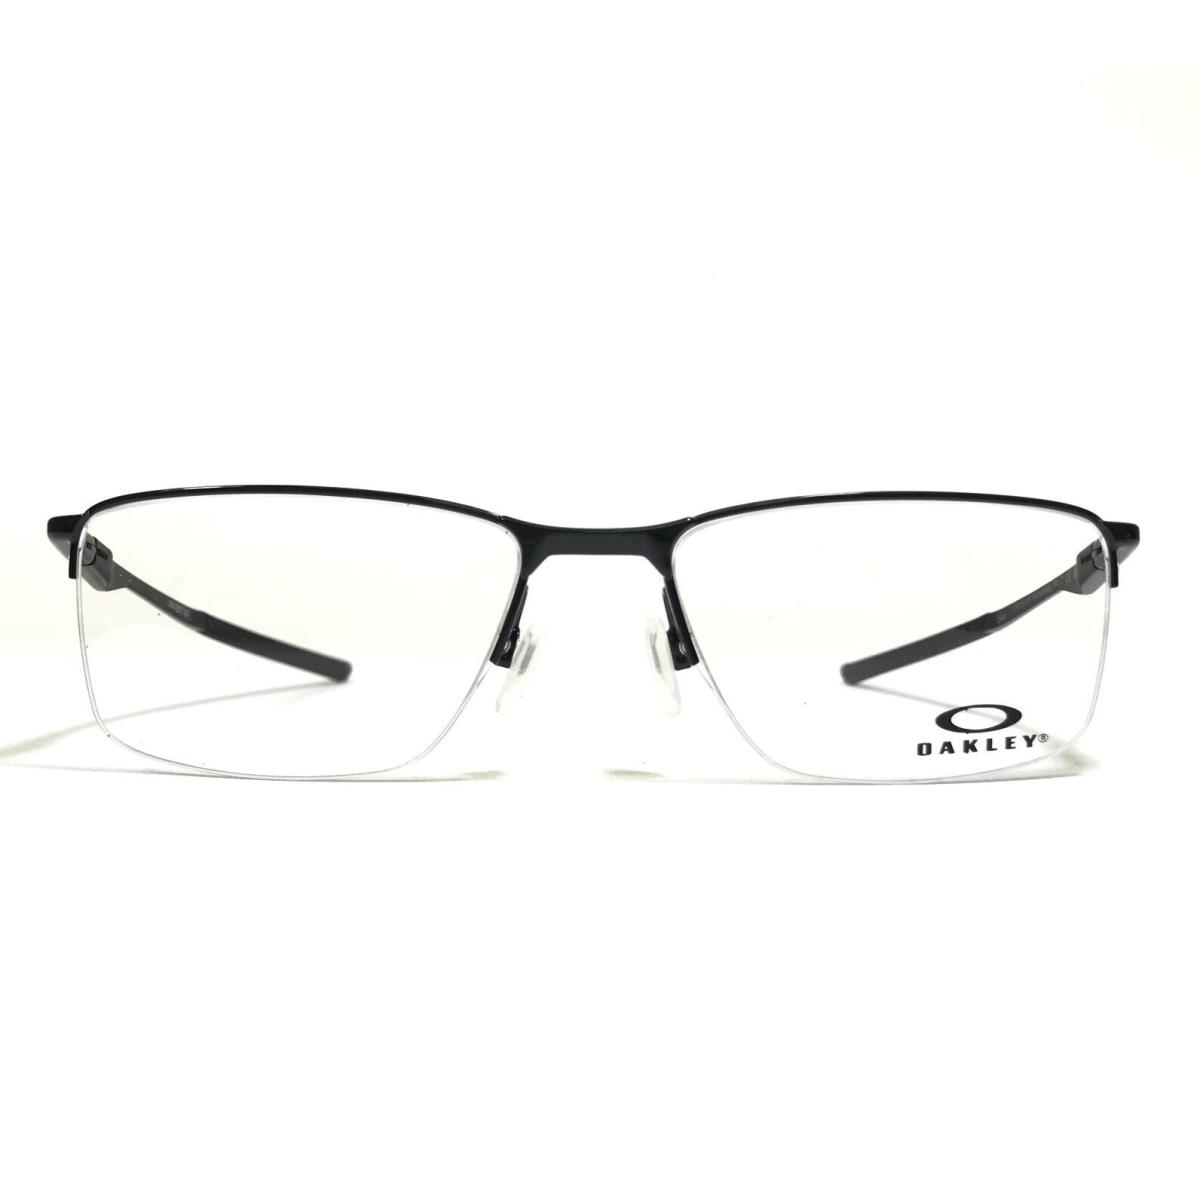 Oakley Eyeglasses Frames OX3218-0156 Socket 5.5 Polished Black 56-18-140 - Frame: Black